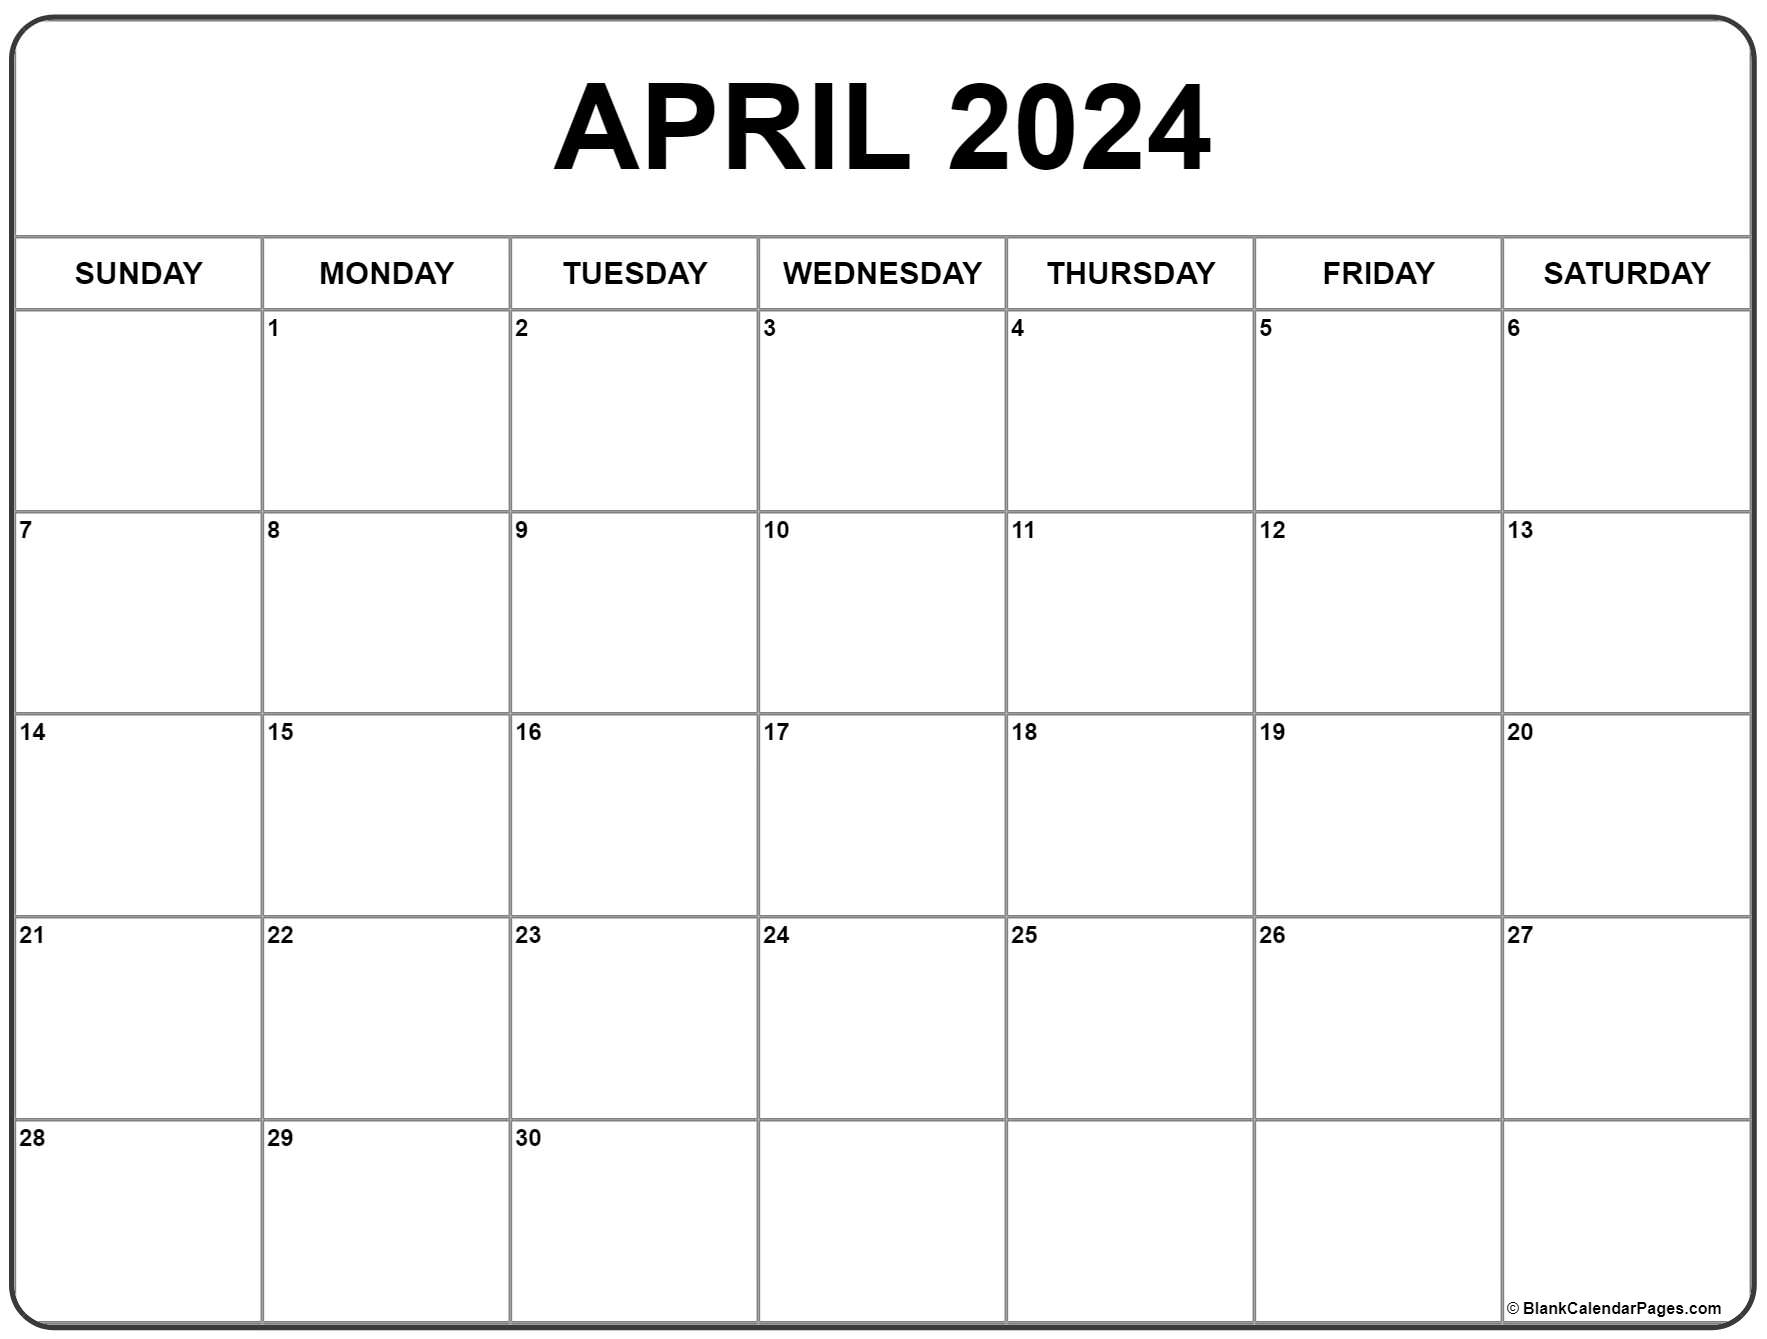 April 2024 Calendar | Free Printable Calendar in Free Printable Calendar 2024 April